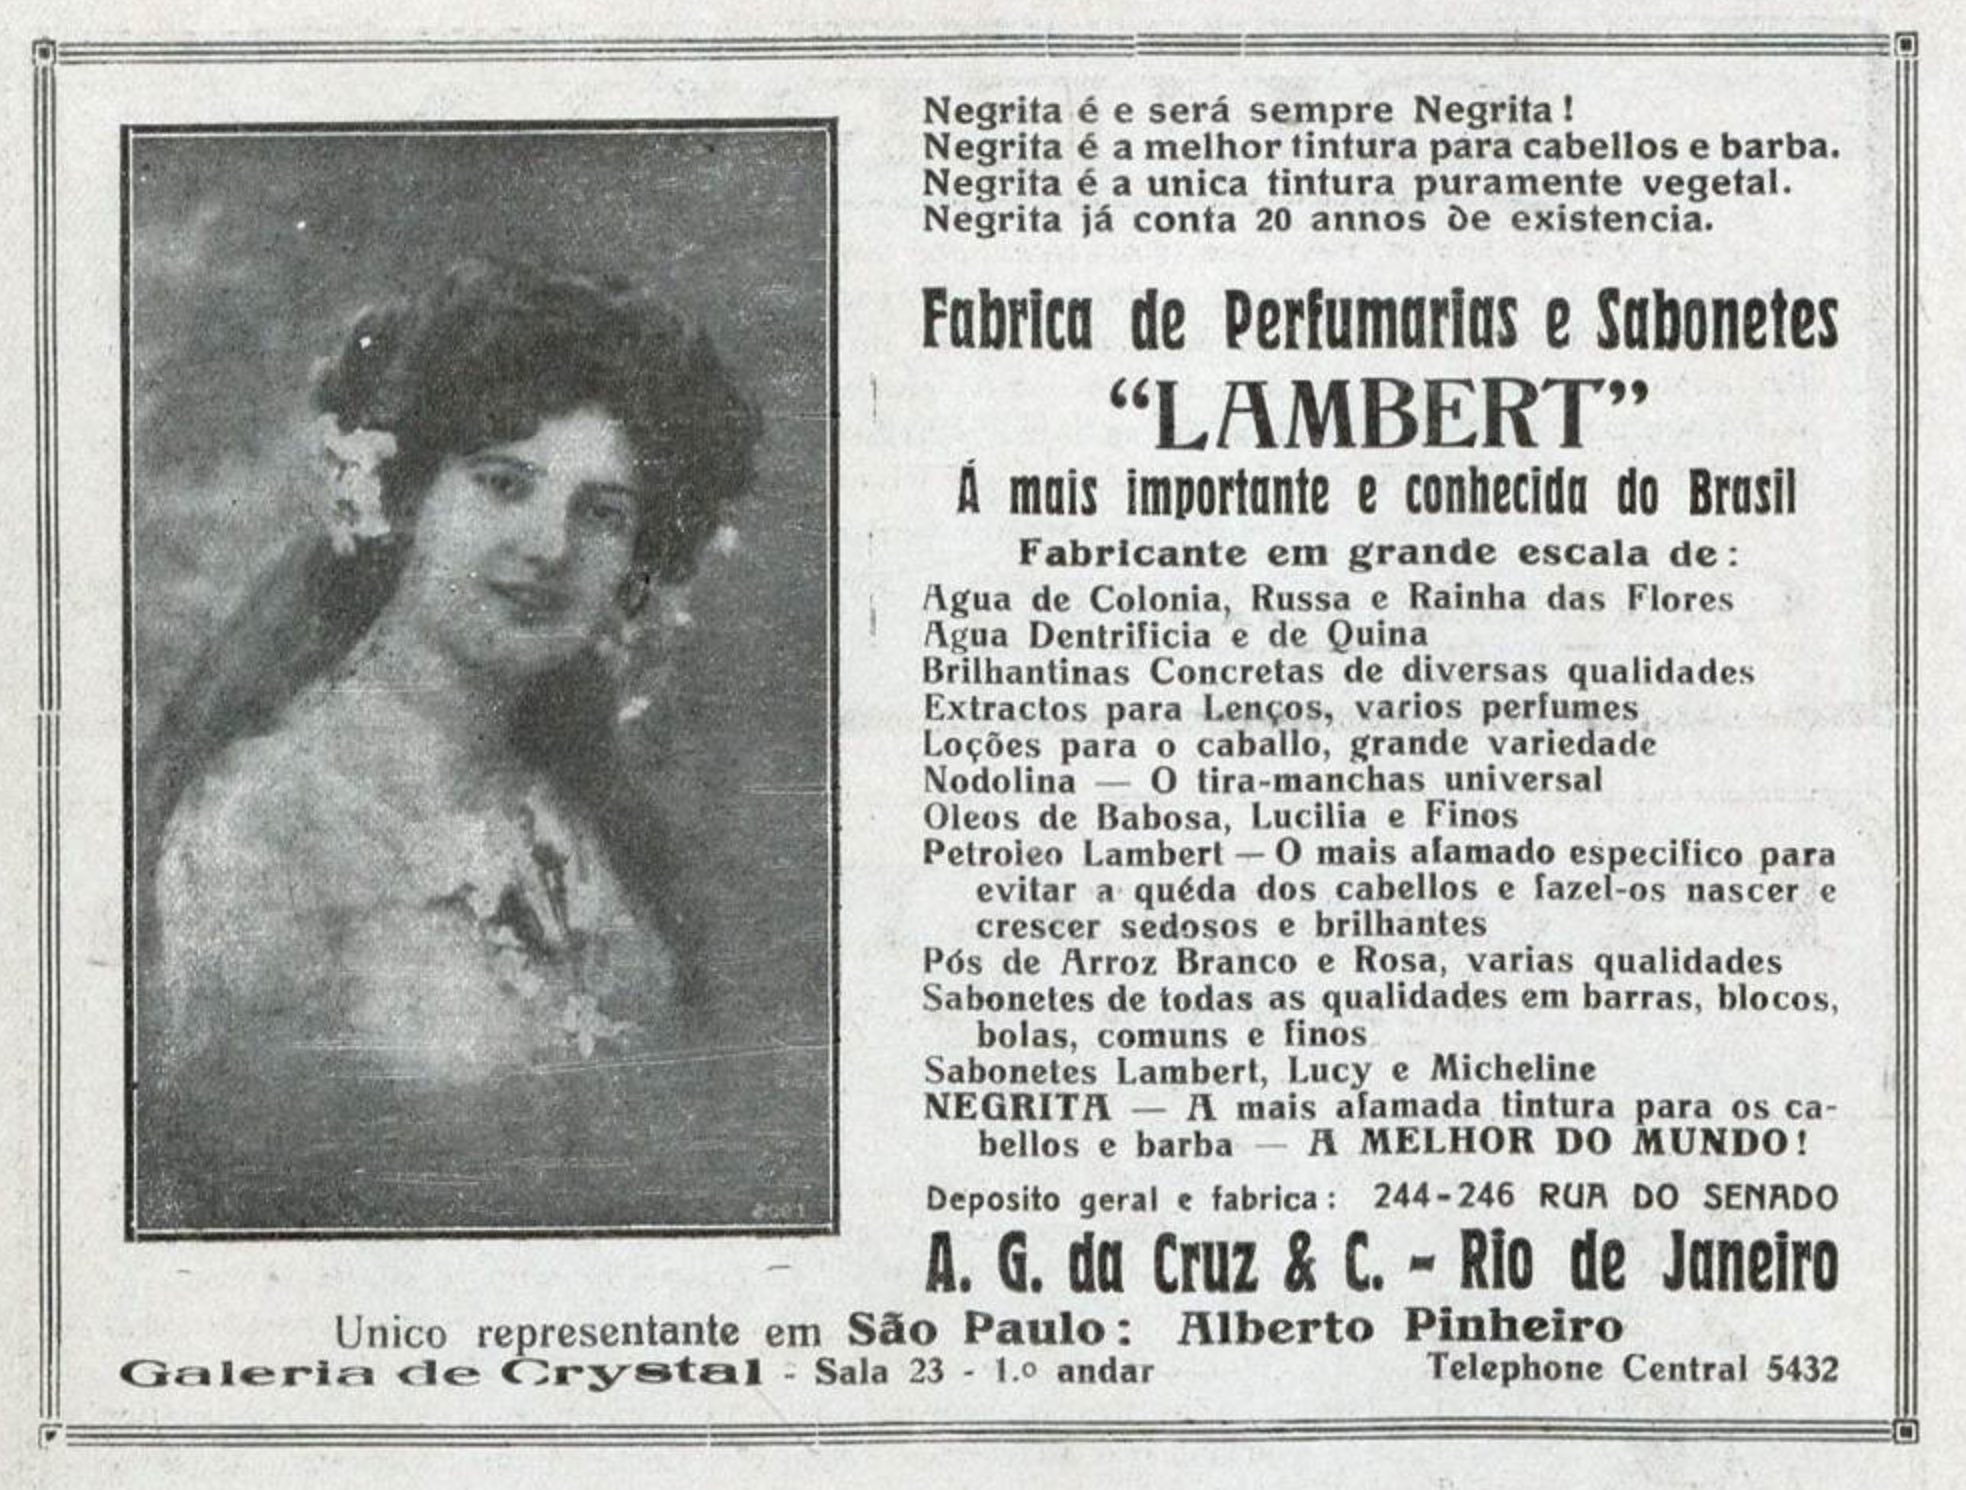 Campanha veiculada em 1919 apresentando os perfumes e sabonetes da marca Lambert